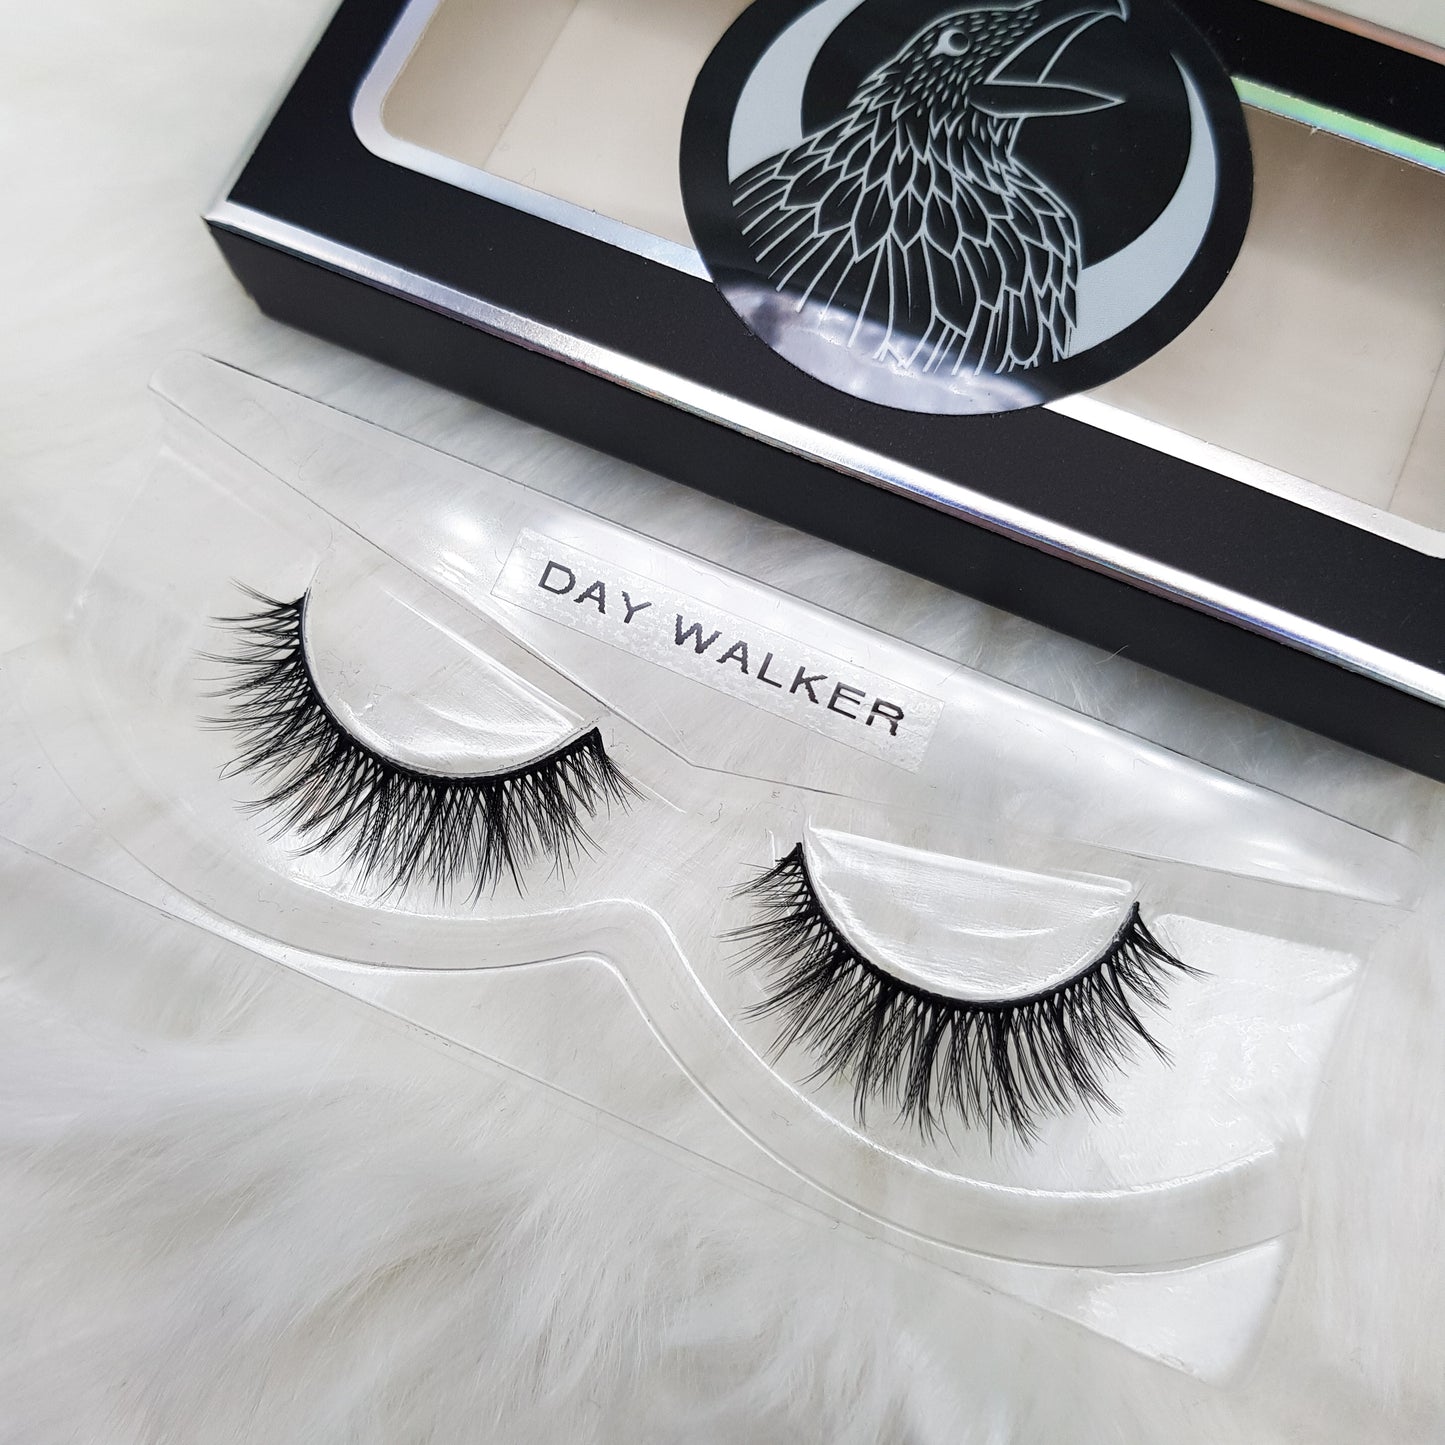 "Day walker" 3D luxury faux mink lashes